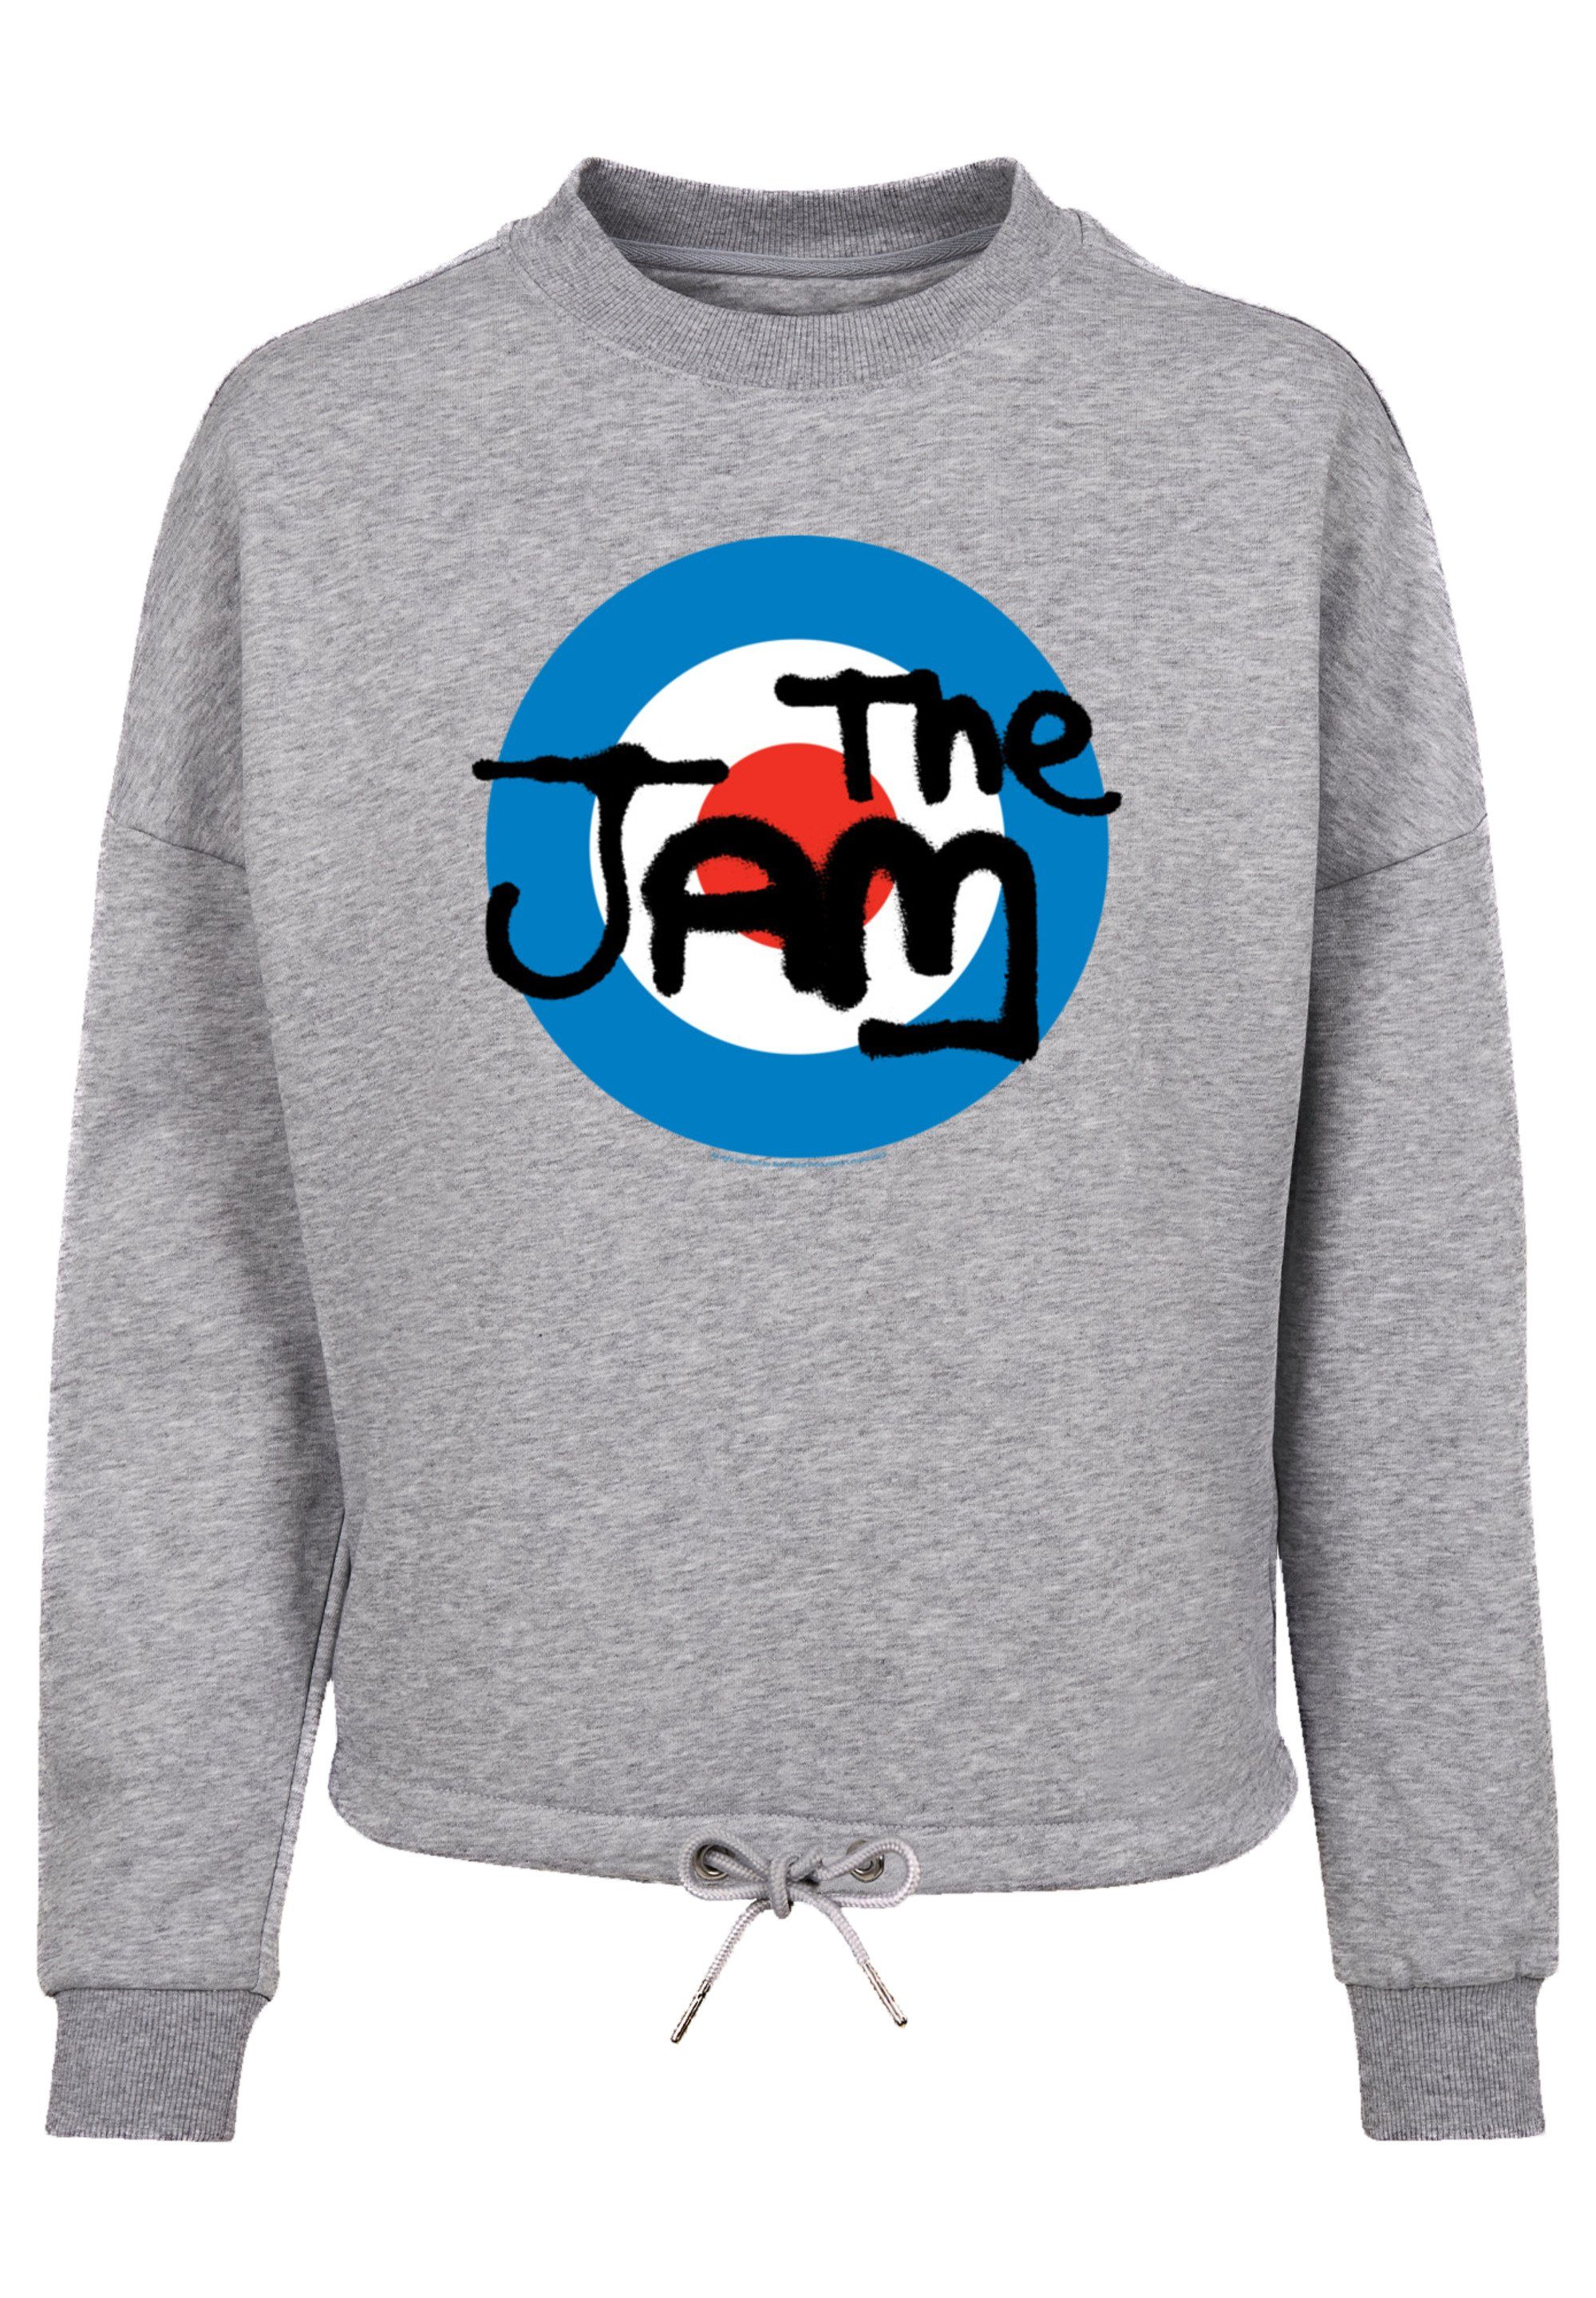 Kordelzug Bündchen Logo Premium Sweatshirt Qualität, Jam The geschnittenen Band am Ärmel und Weit F4NT4STIC Classic